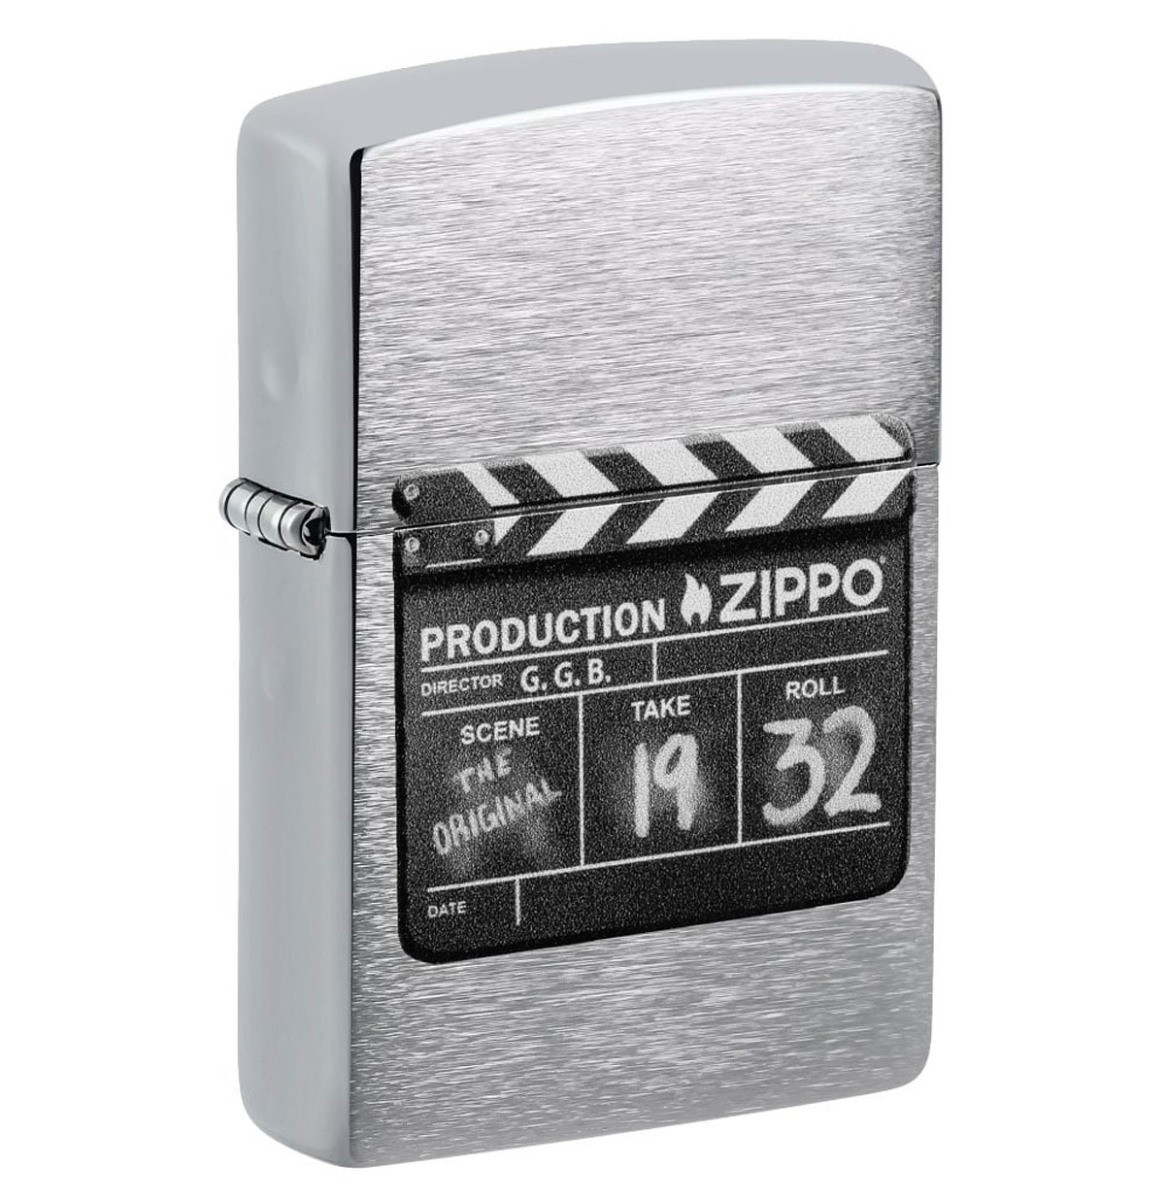 Zippo Aansteker Production Film Take